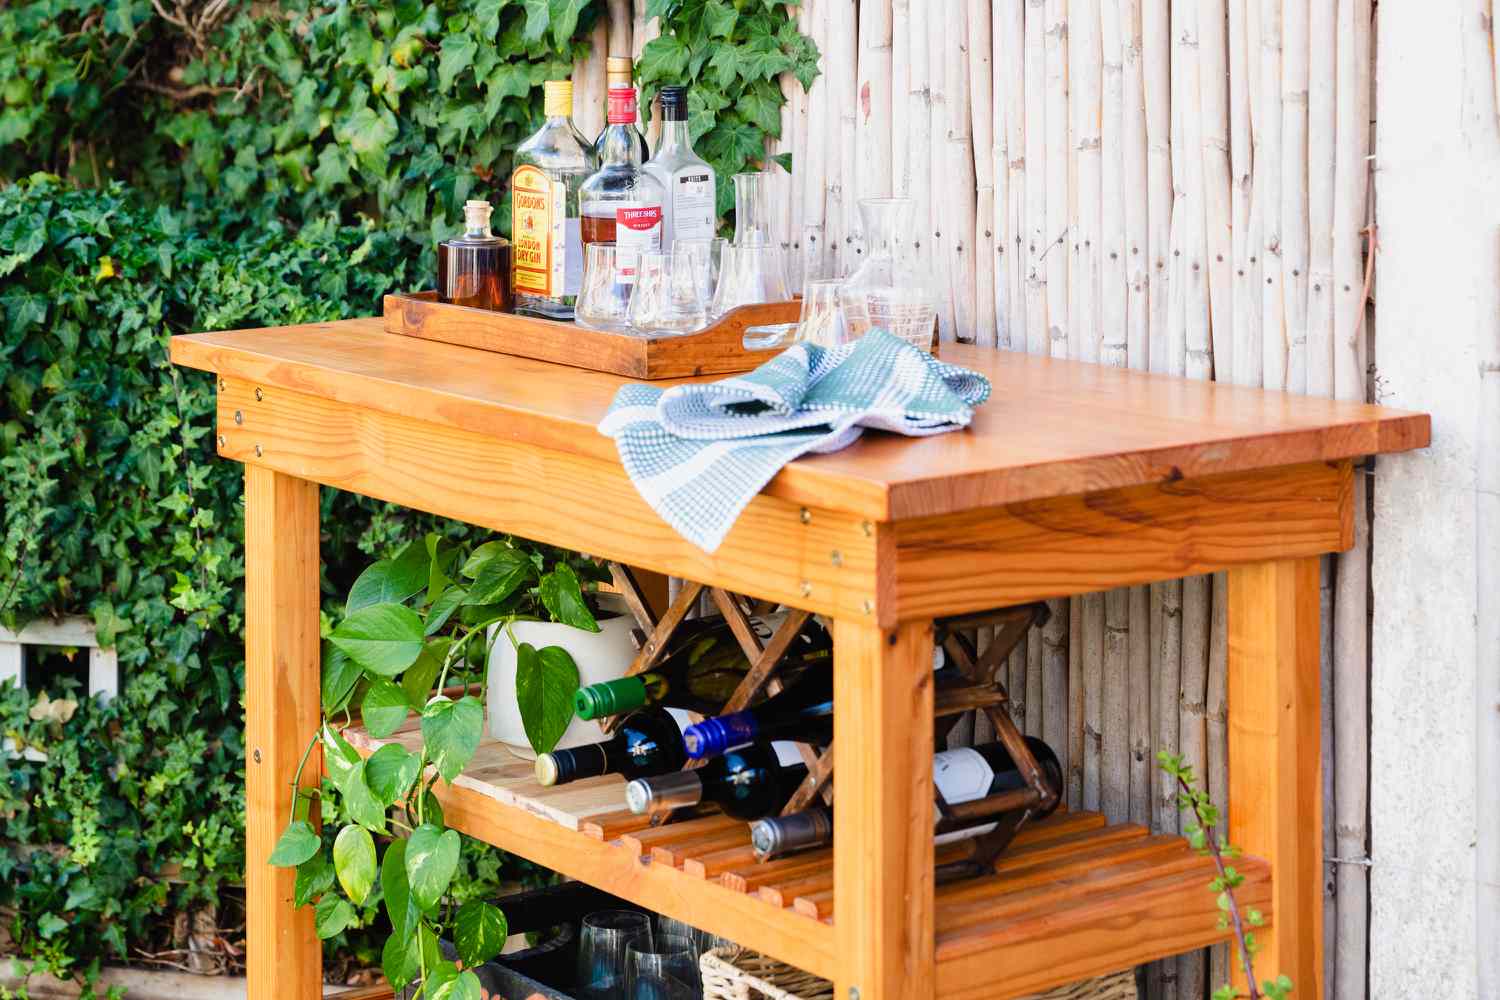 DIY-Barwagen aus Holz mit Spirituosen- und Weinflaschen in der Nähe von Pflanzen im Freien, Nahaufnahme